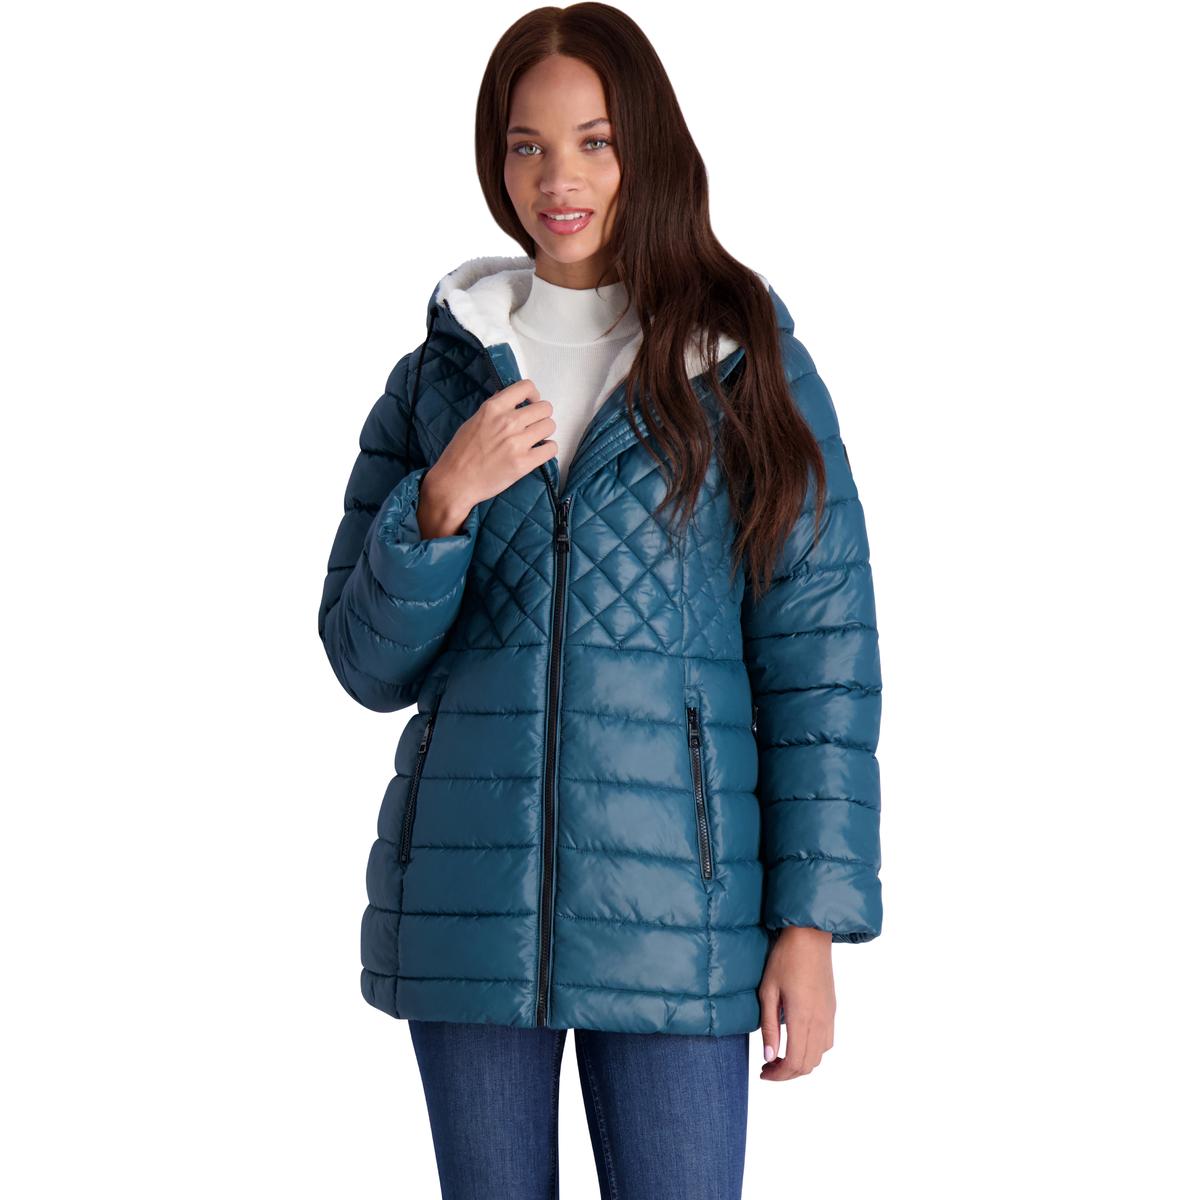 Steve Madden Women's Glacier Shield Winter Puffer Coat with Faux